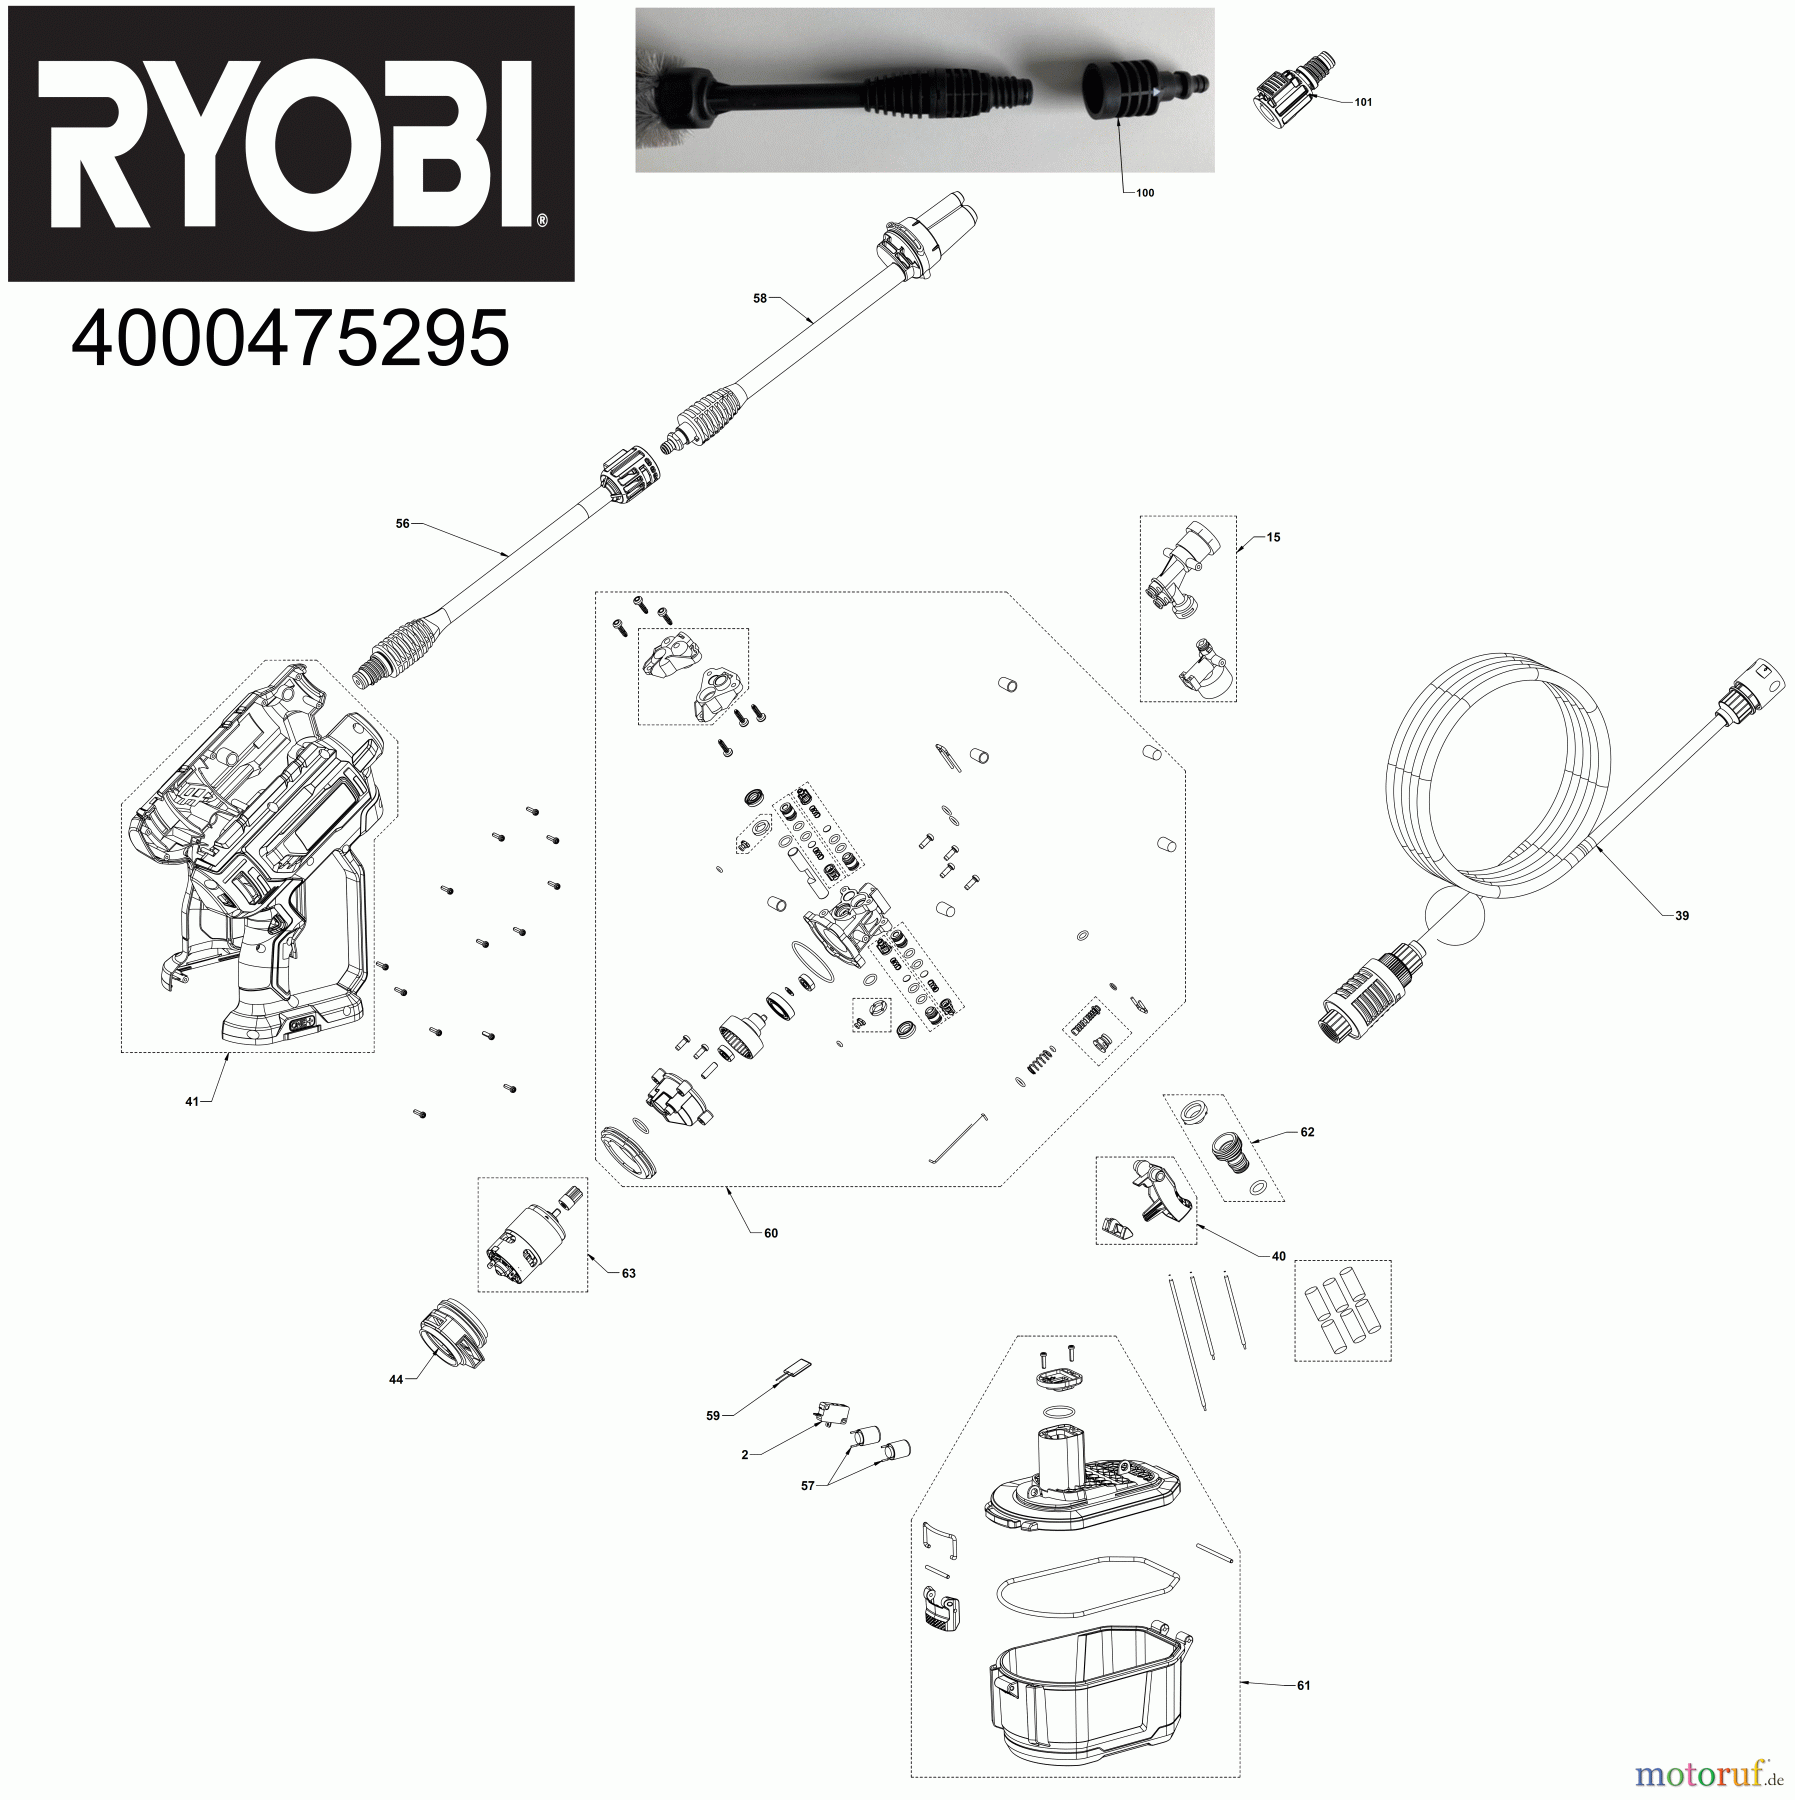  Ryobi Hochdruckreiniger RY18PW22A 18 V ONE+ Akku-Mitteldruckreiniger, Durchflussmenge 182 l/h Seite 1